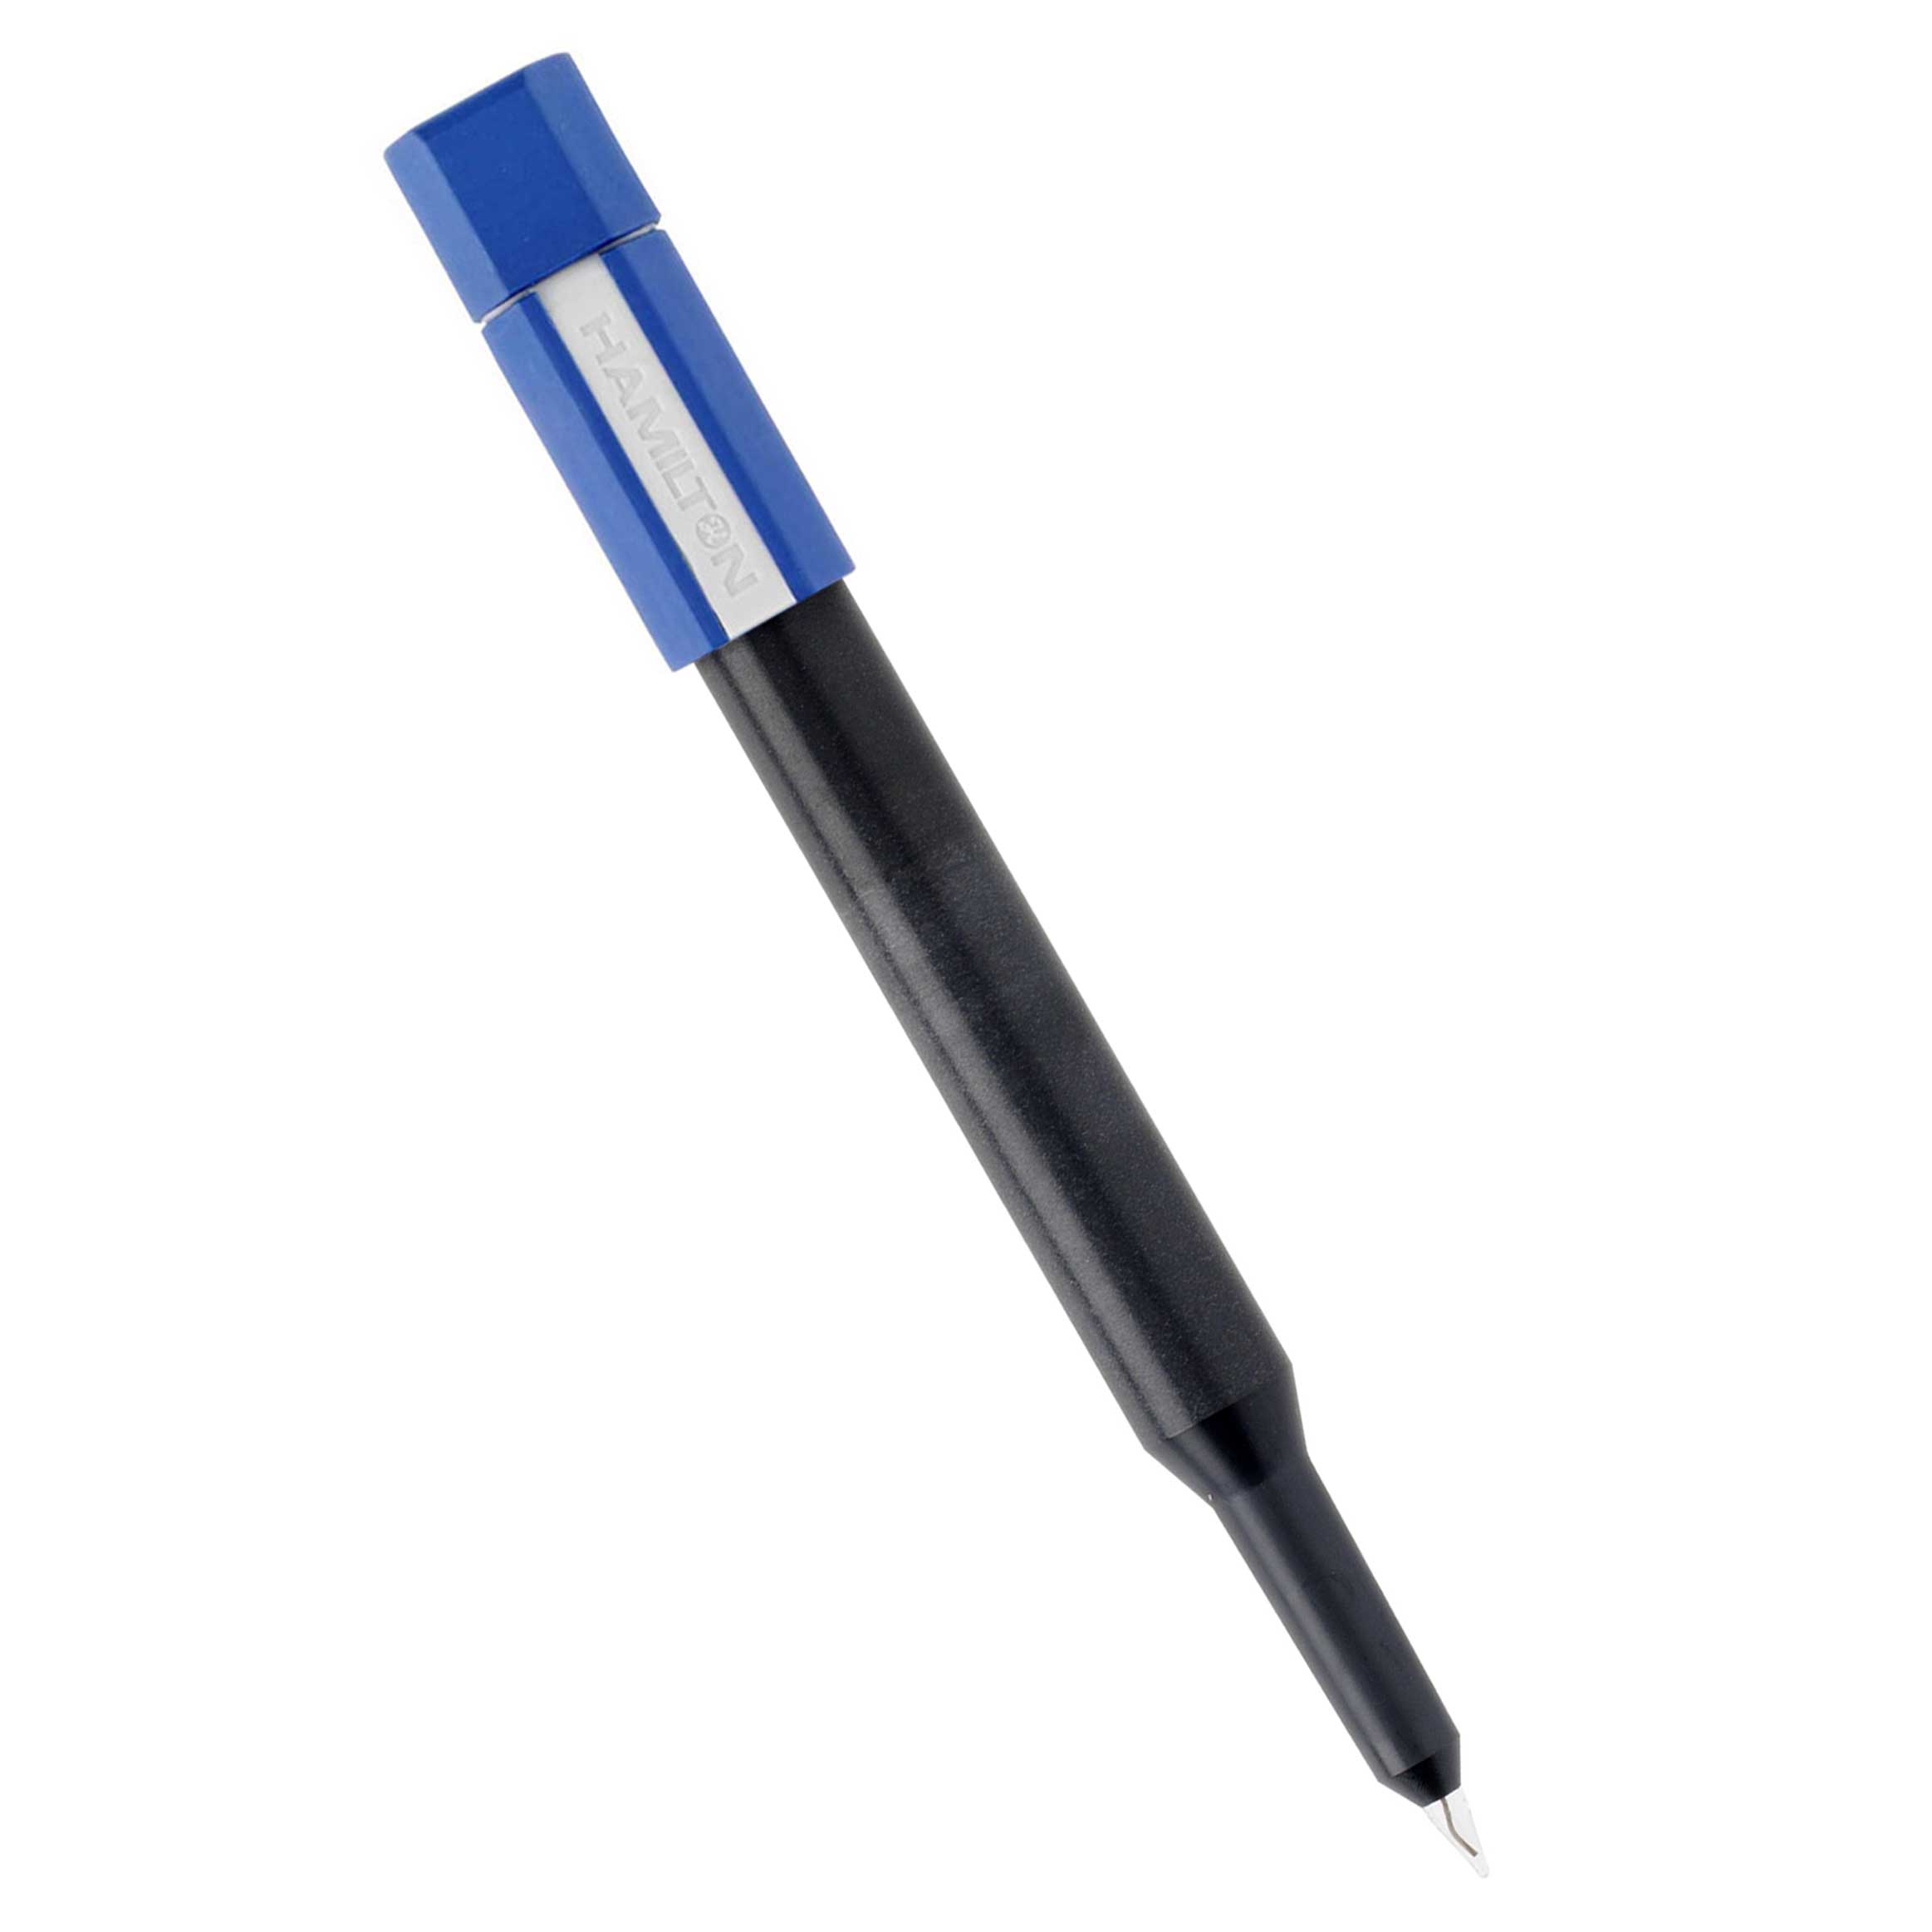 Electrodo de pH HAMILTON DOUBLE PORE F, penetración, Ø 6 mm, 2 a 14 pH, 0 a 60 ºC, cuerpo plástico, polímero. SIN CABLE. HAMILTON.